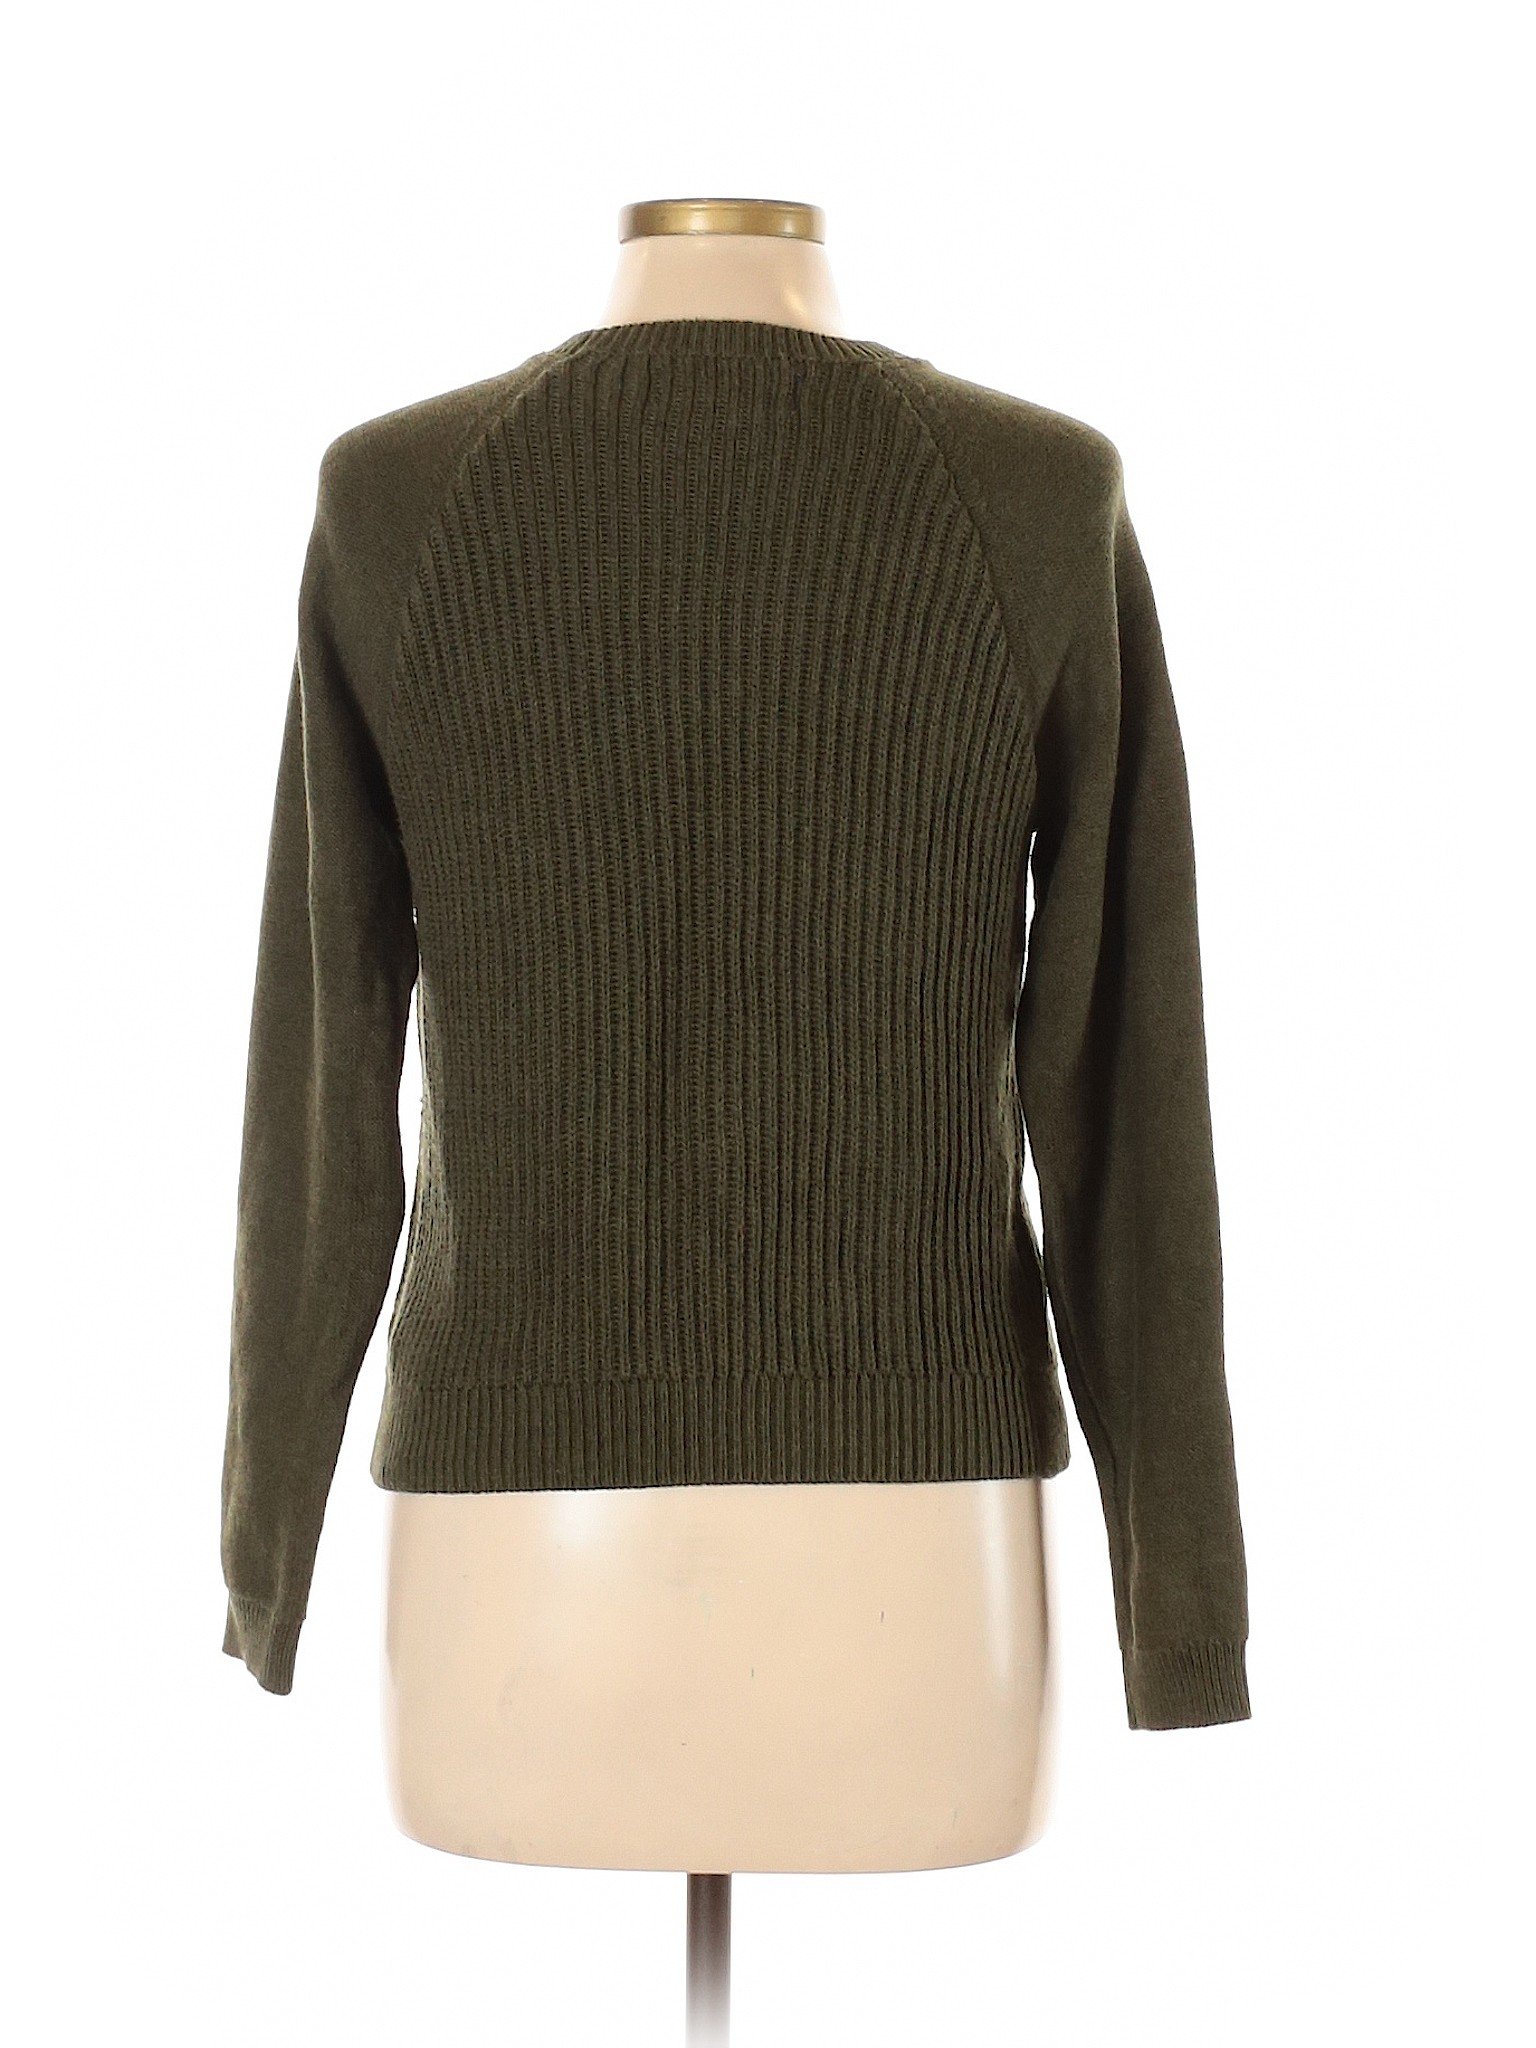 Aeropostale Women Green Pullover Sweater L | eBay